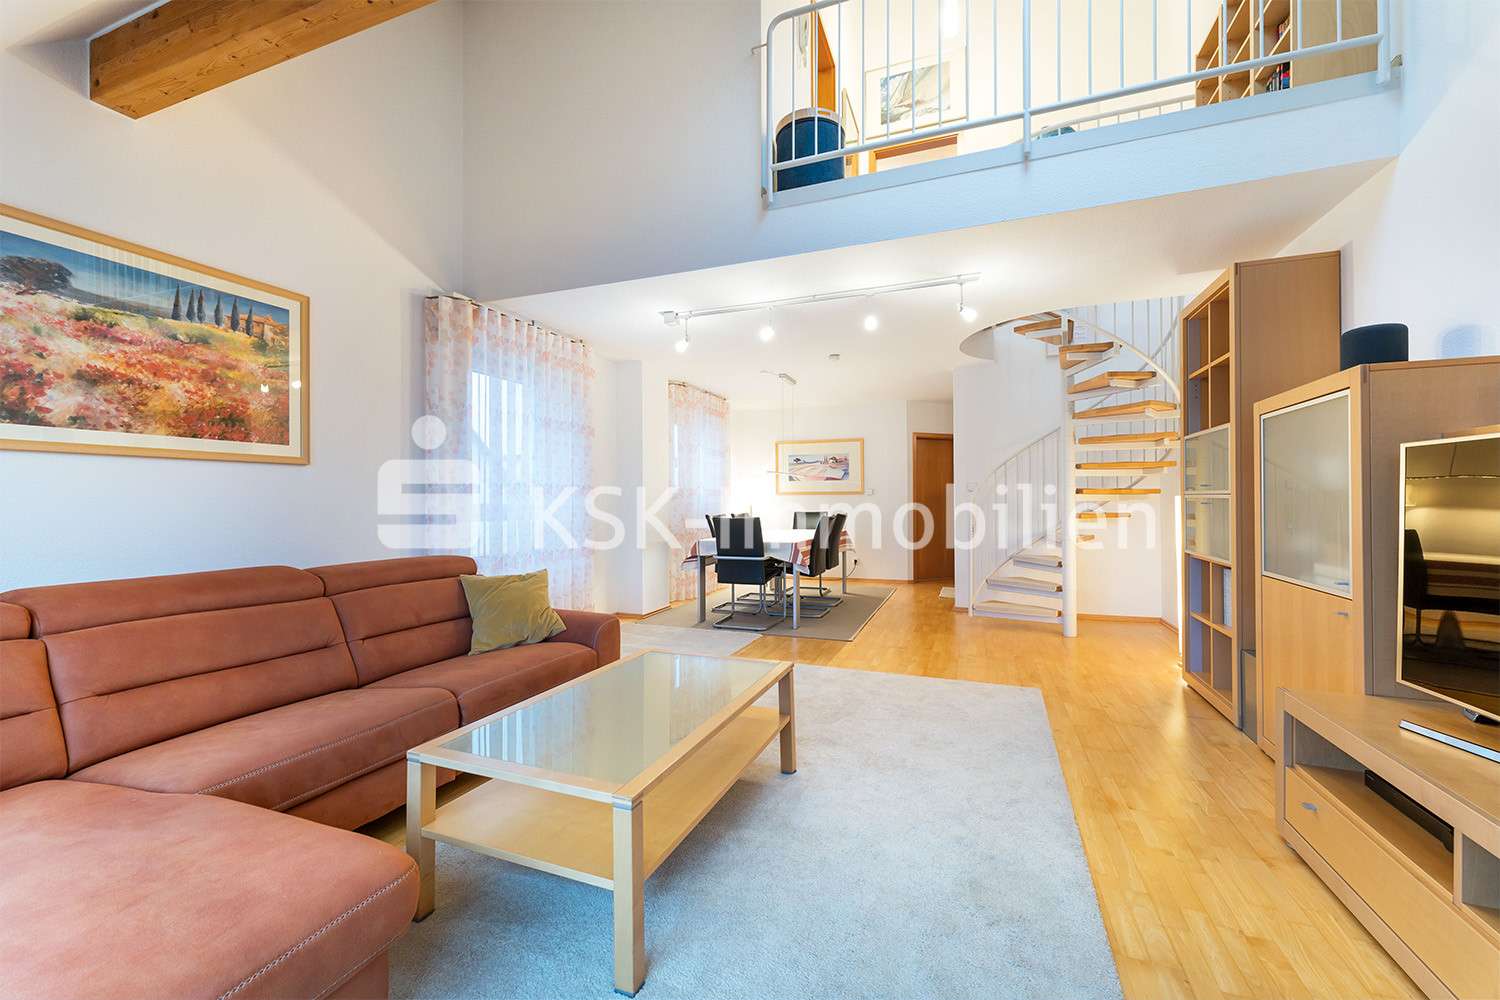 111621 Wohnzimmer Obergeschoss - Maisonette-Wohnung in 40764 Langenfeld (Rheinland) mit 100m² kaufen